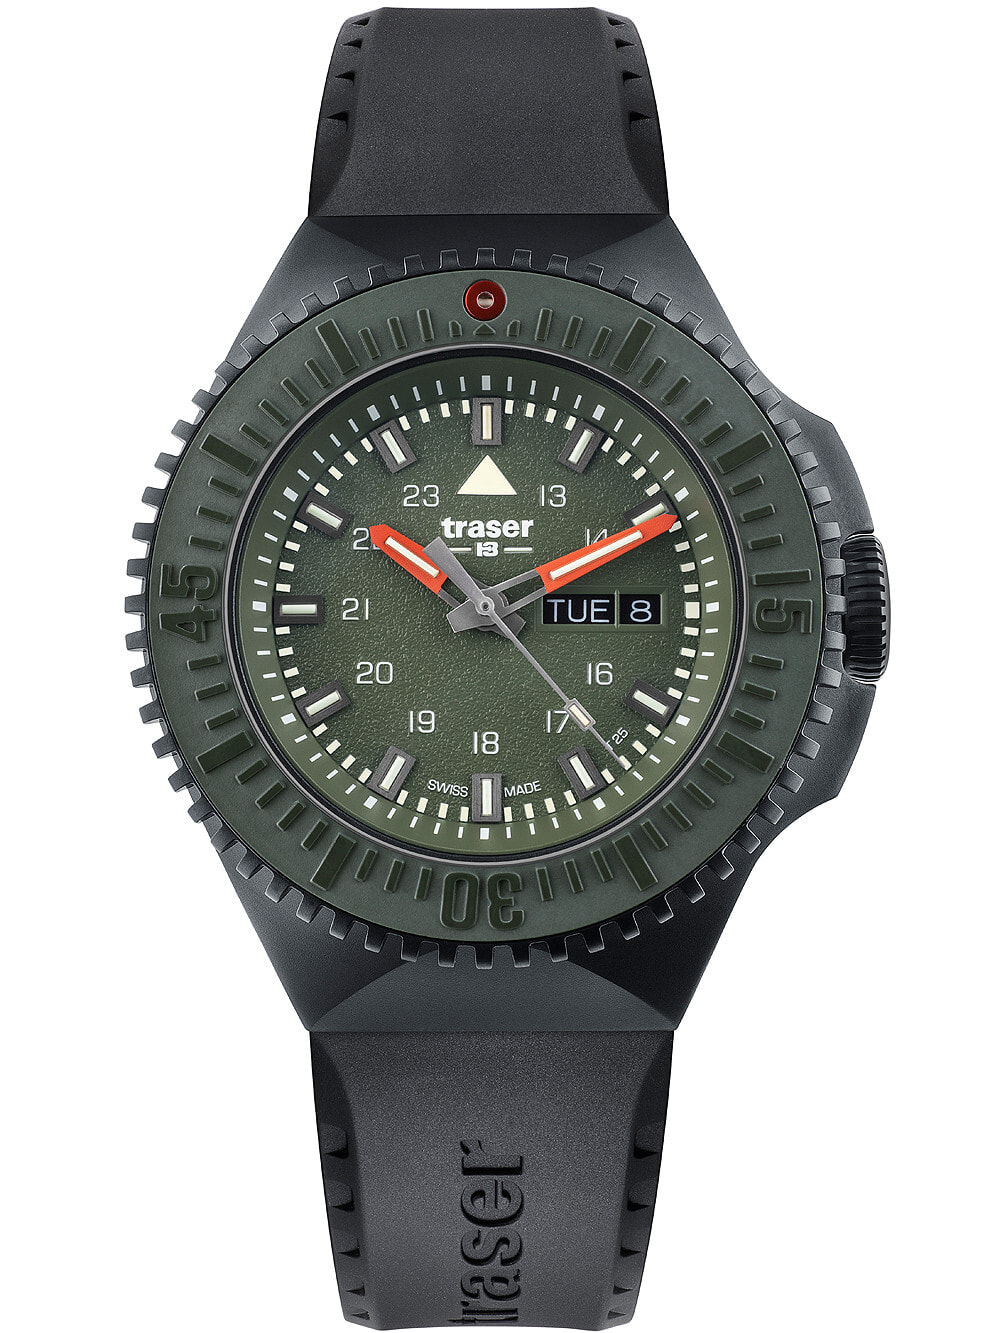 Мужские наручные часы с черным силиконовым ремешком Traser H3 109859 P69 Black-Stealth Green 46mm 20ATM